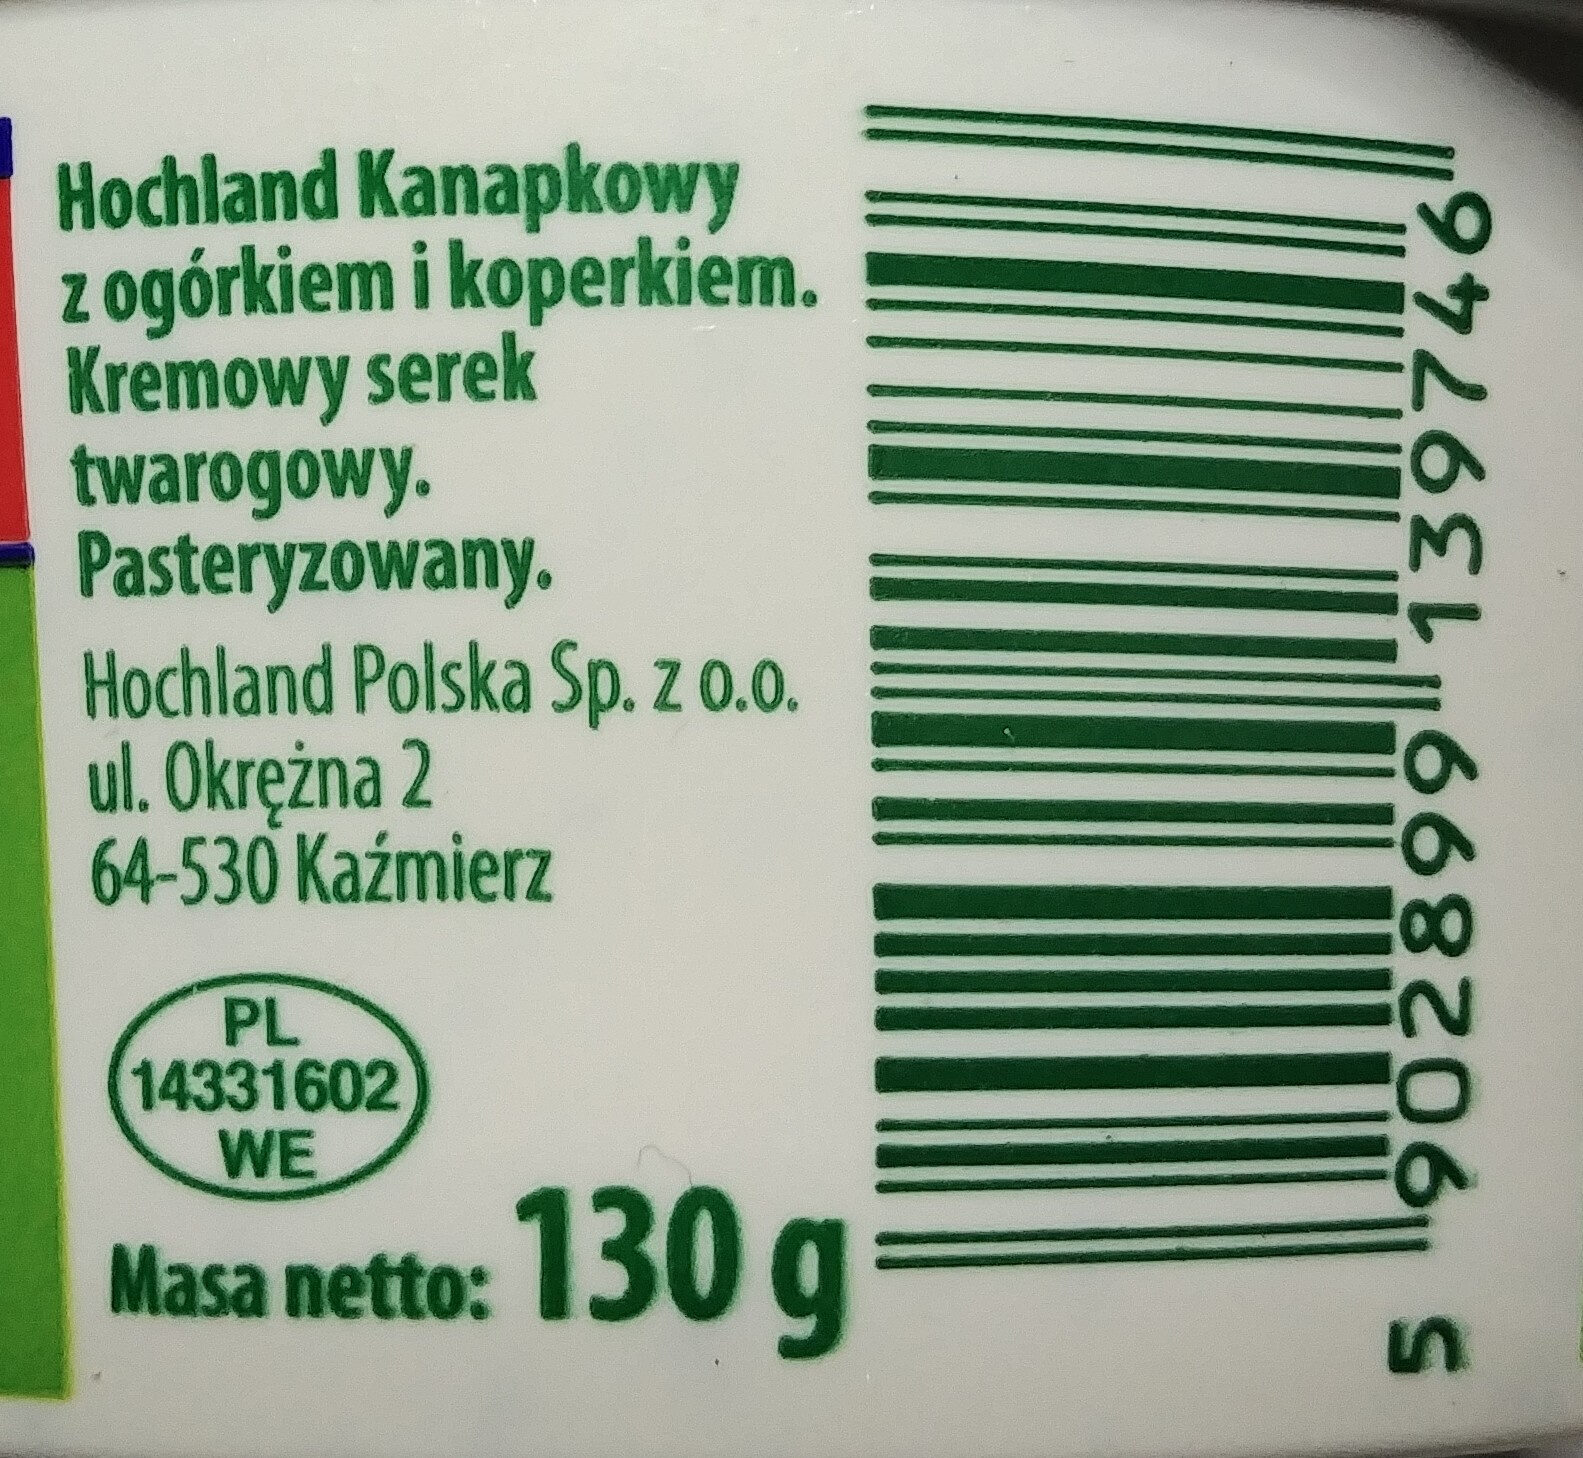 Kanapkowy z ogórkiem i koperkiem. - Nutrition facts - pl